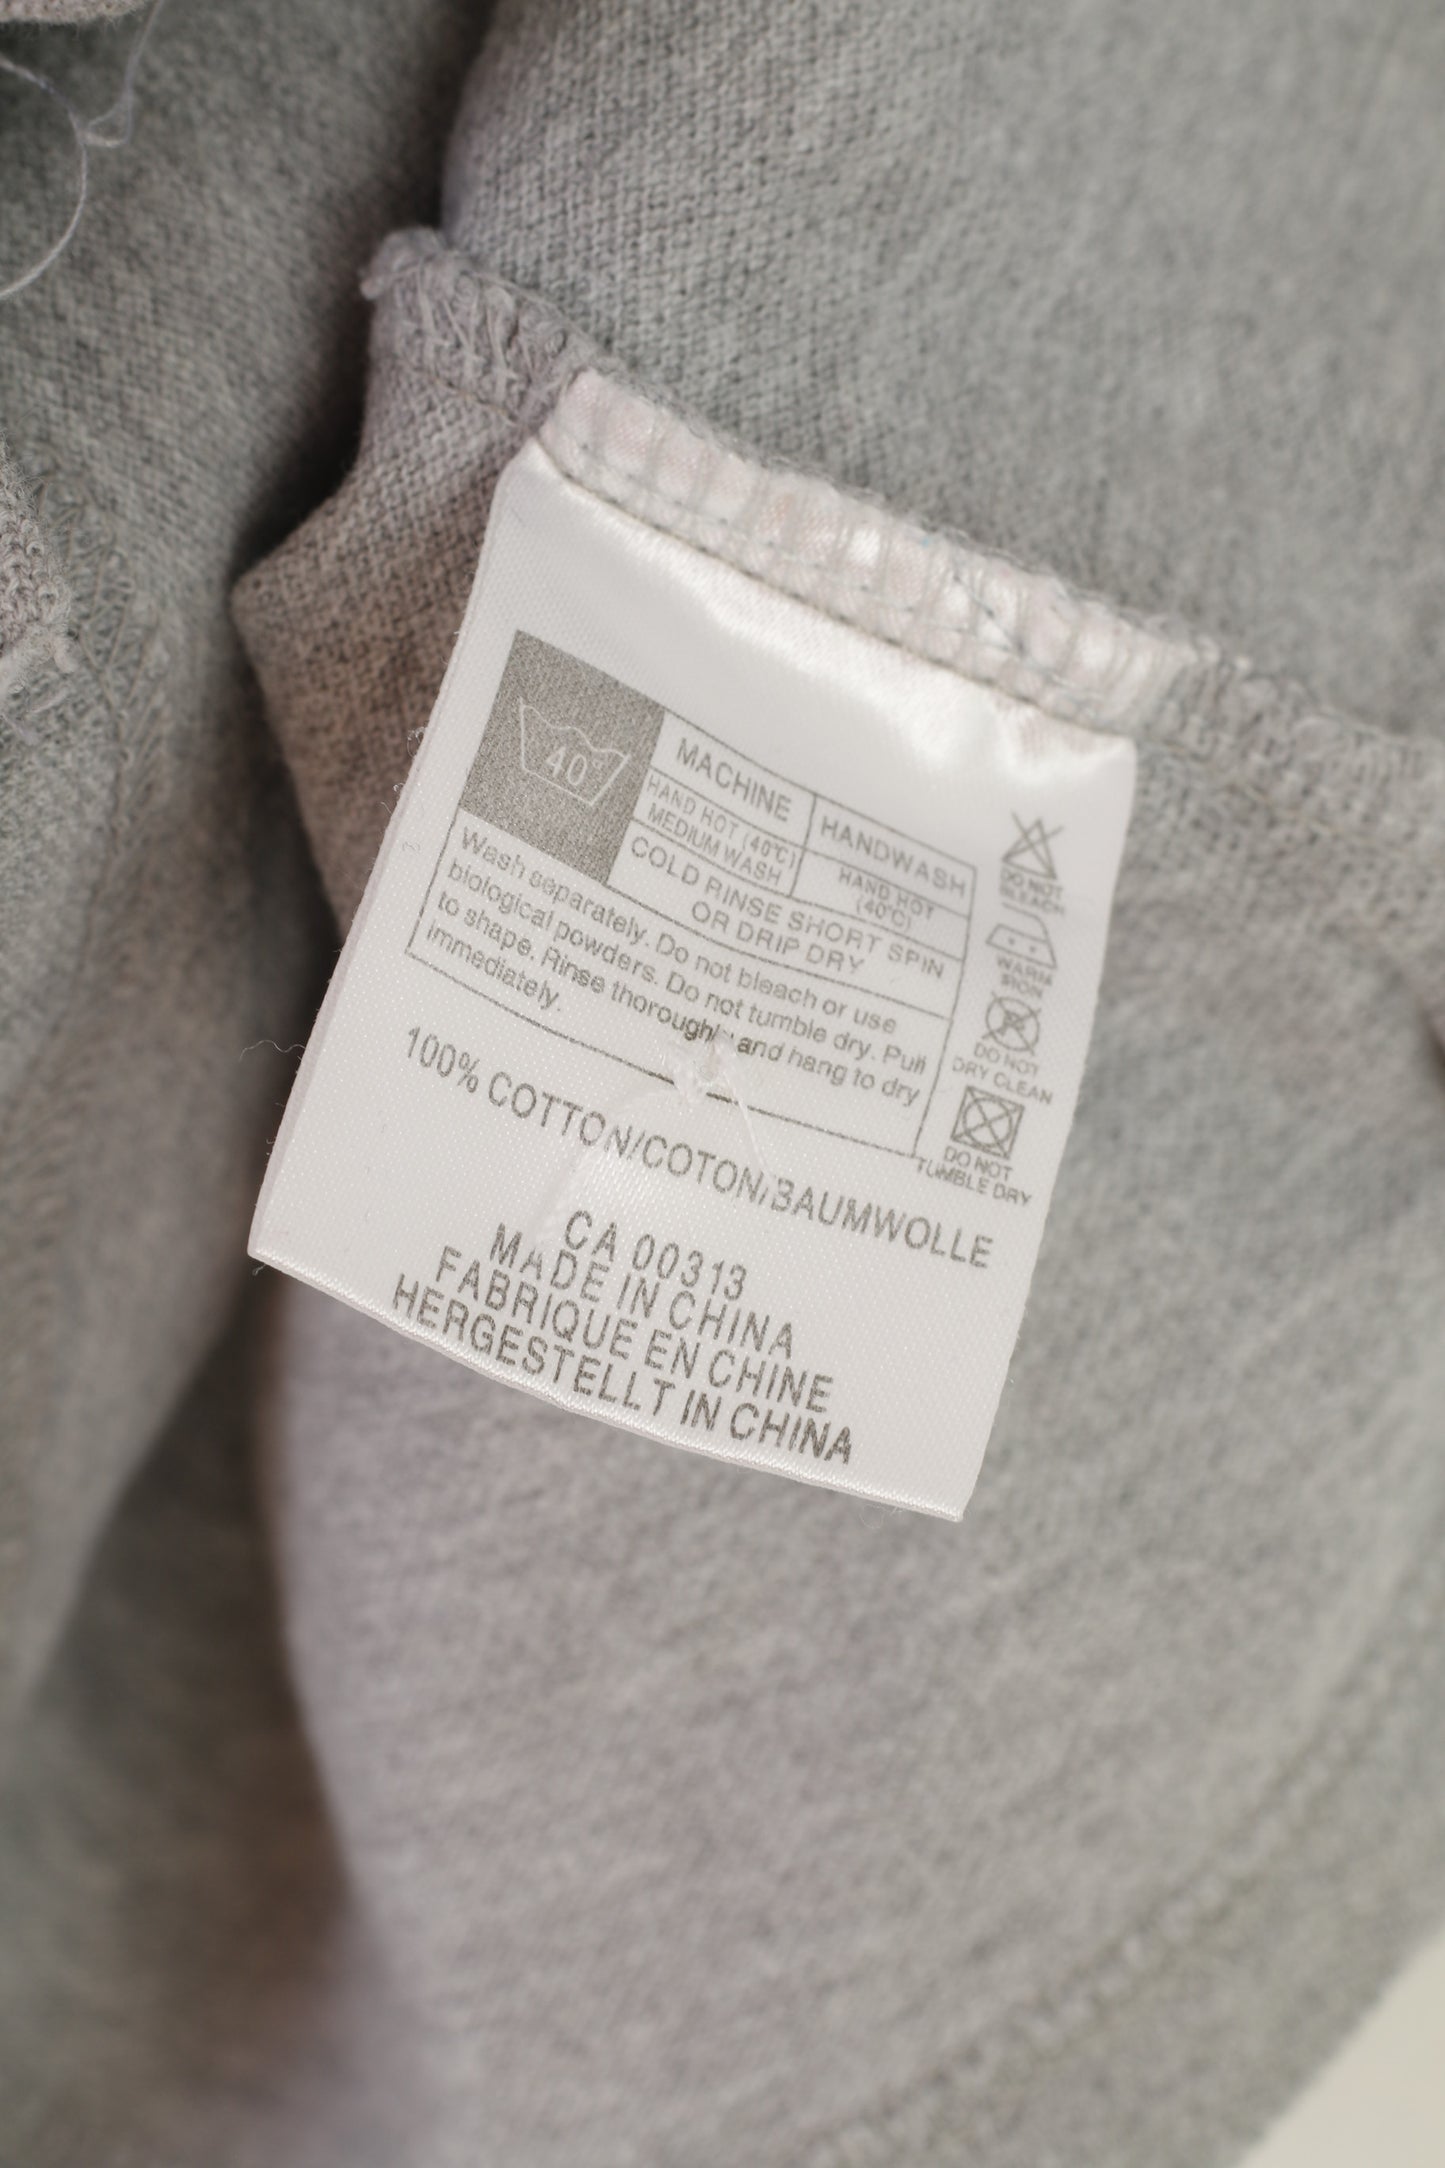 Lyle & Scott Men L Polo Shirt Grey Cotton Sport Short Sleeve Vintage Top